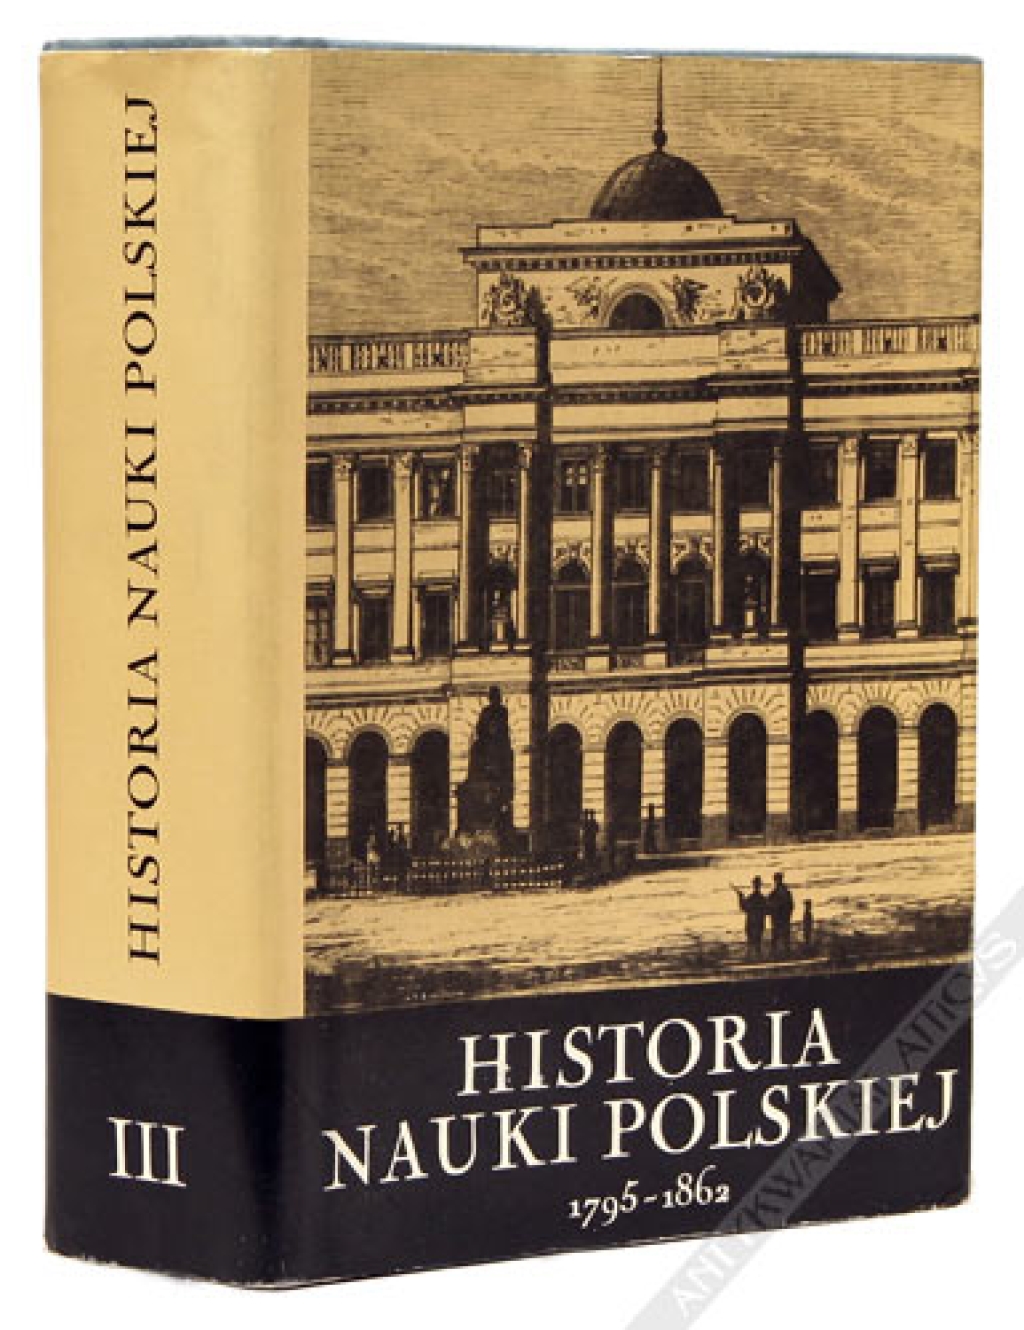 Historia nauki polskiej, t. III: 1795-1862